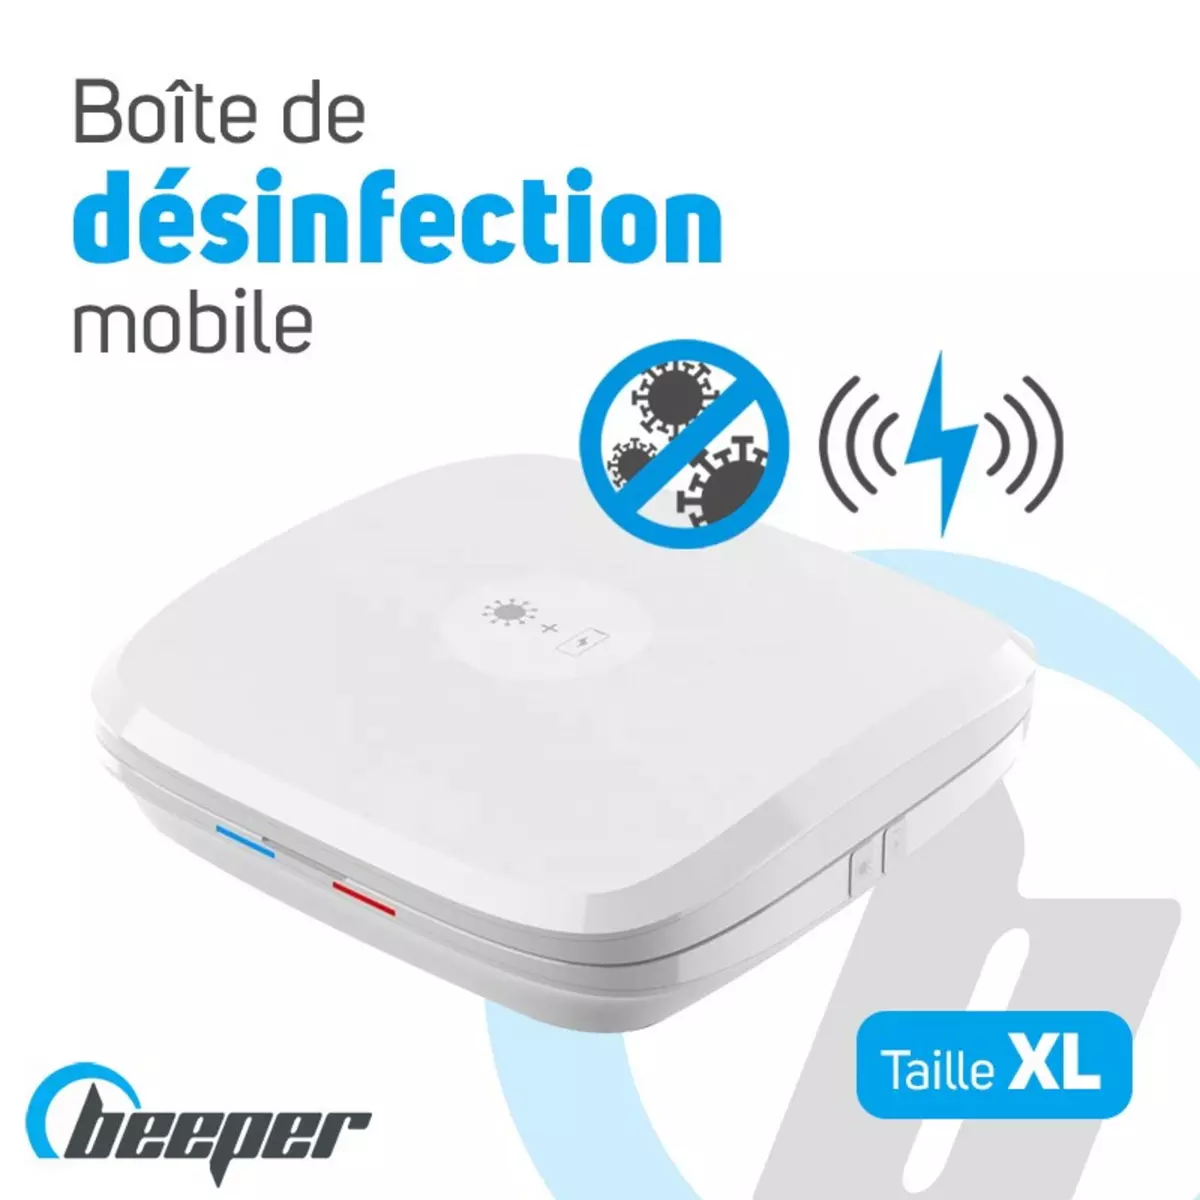 BEEPER Box de désinfection & recharge mobile 4 en 1 (Taille XL)